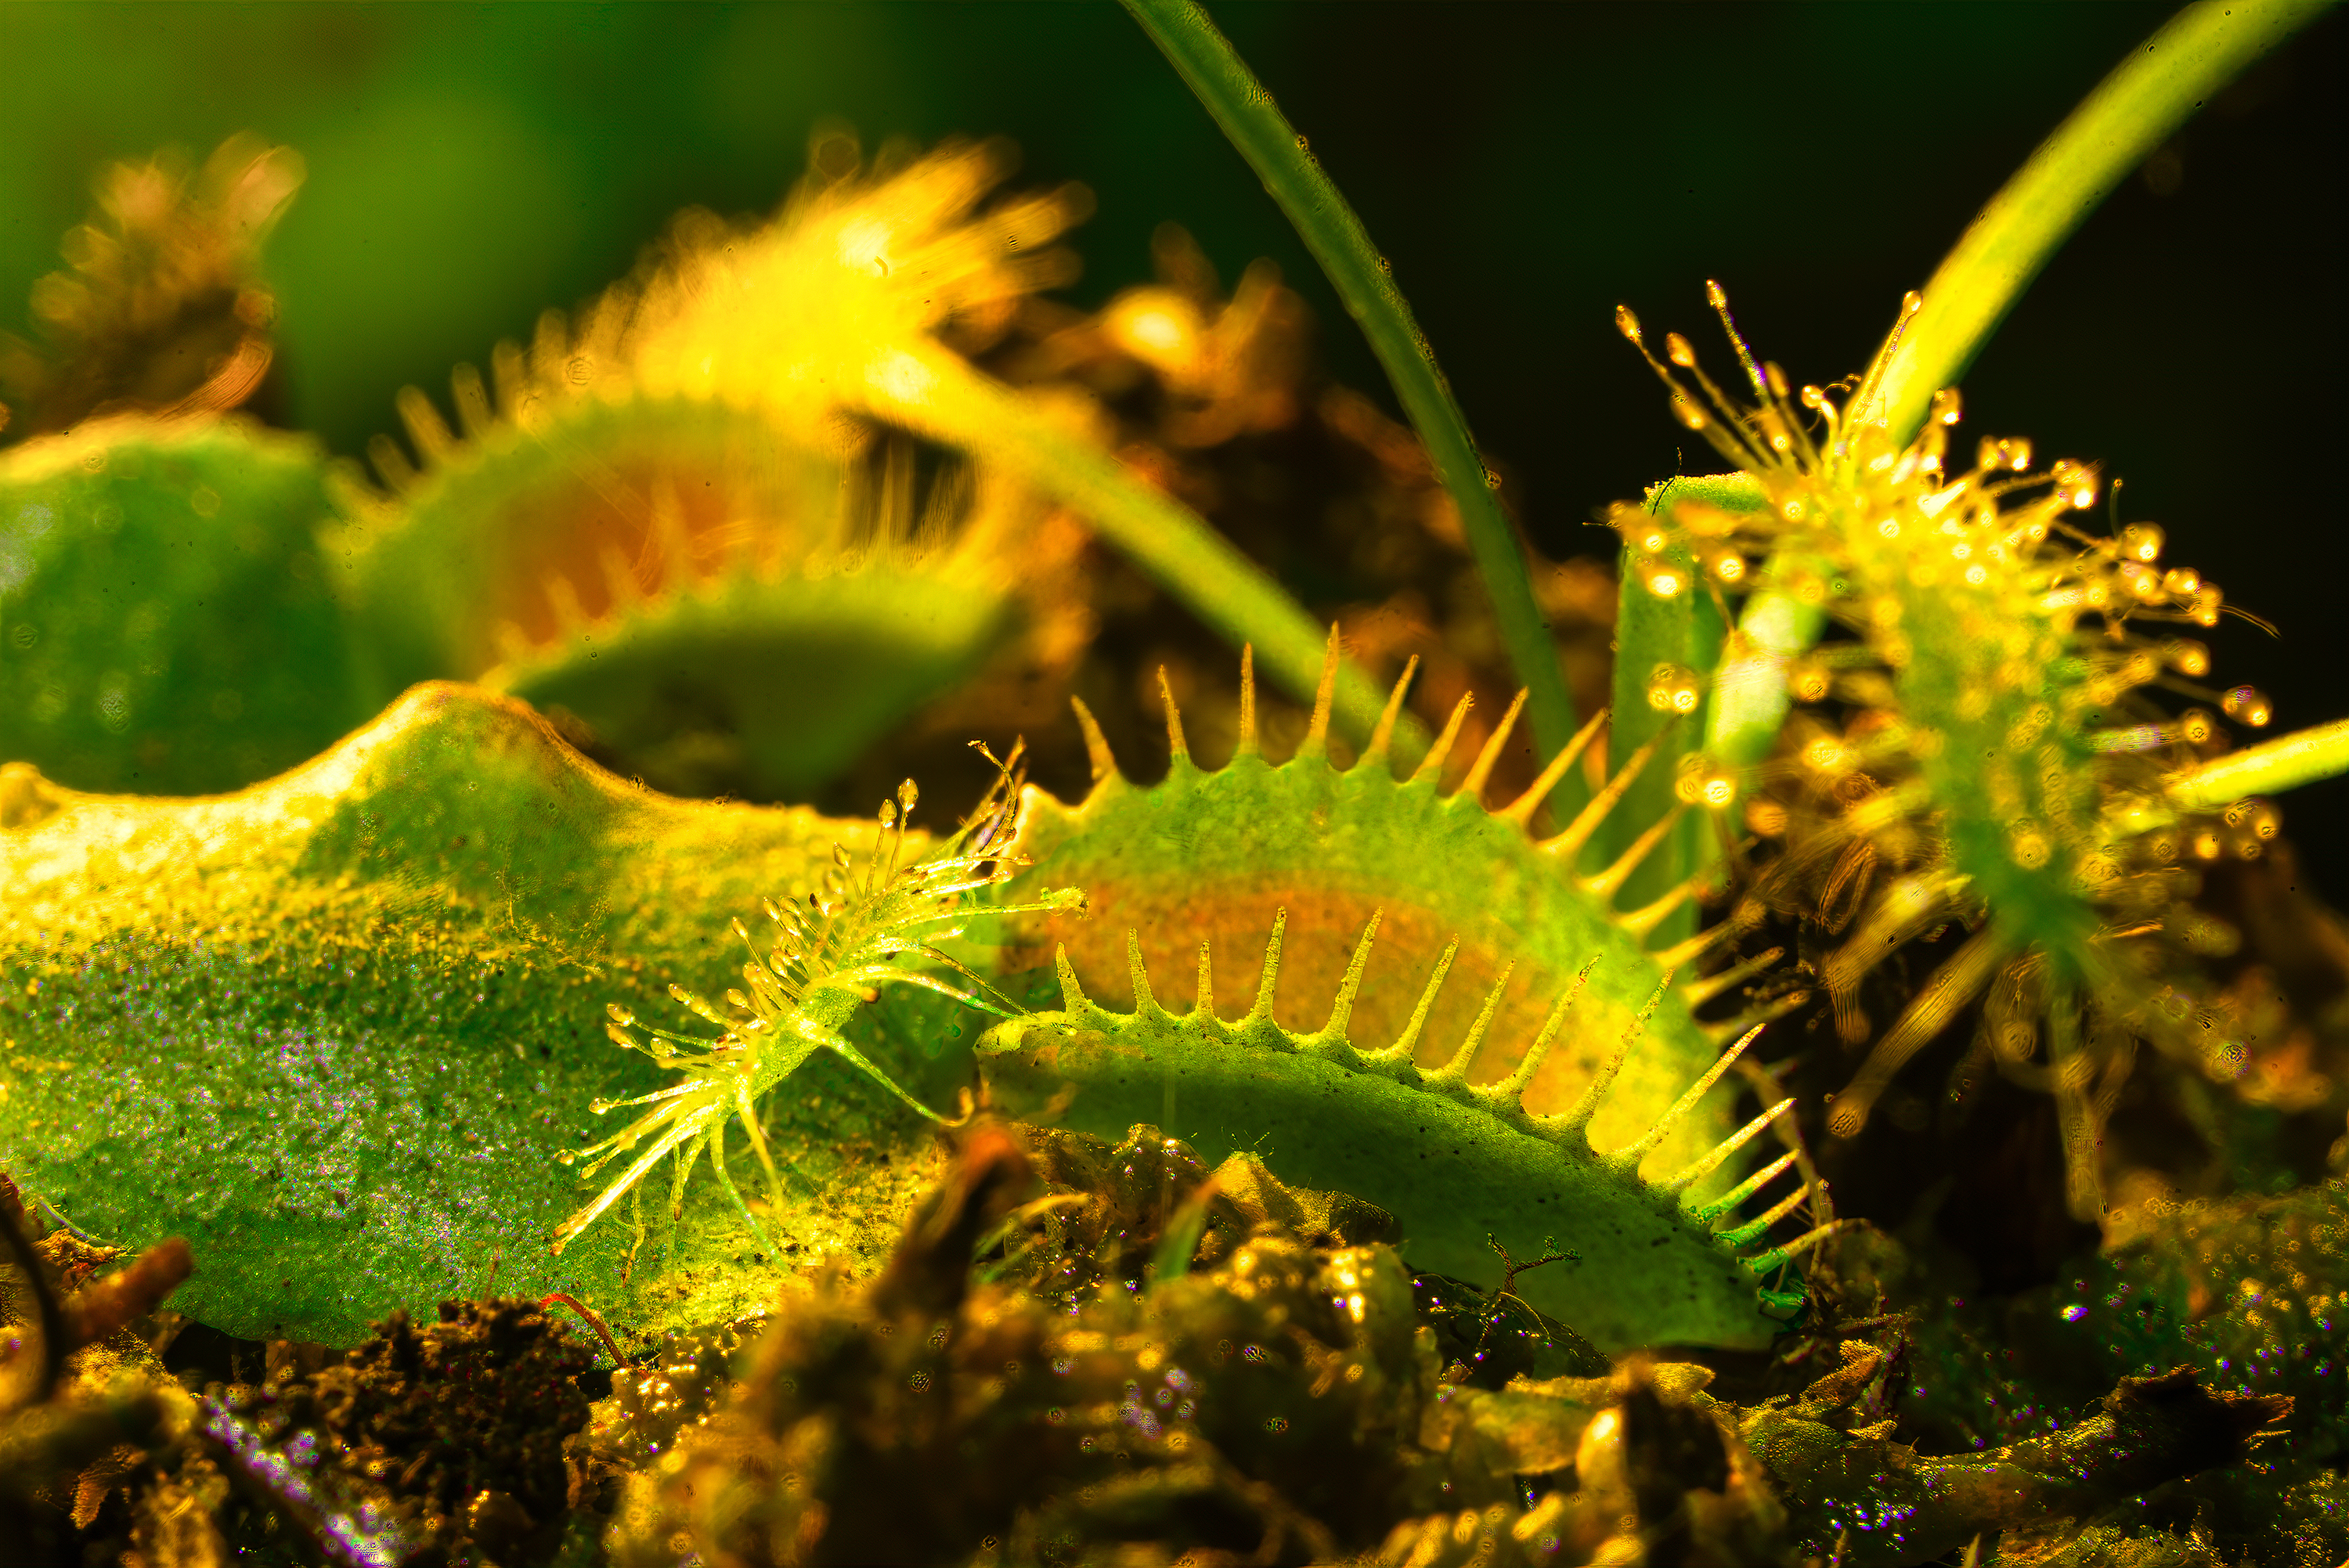 Venus flytraps.